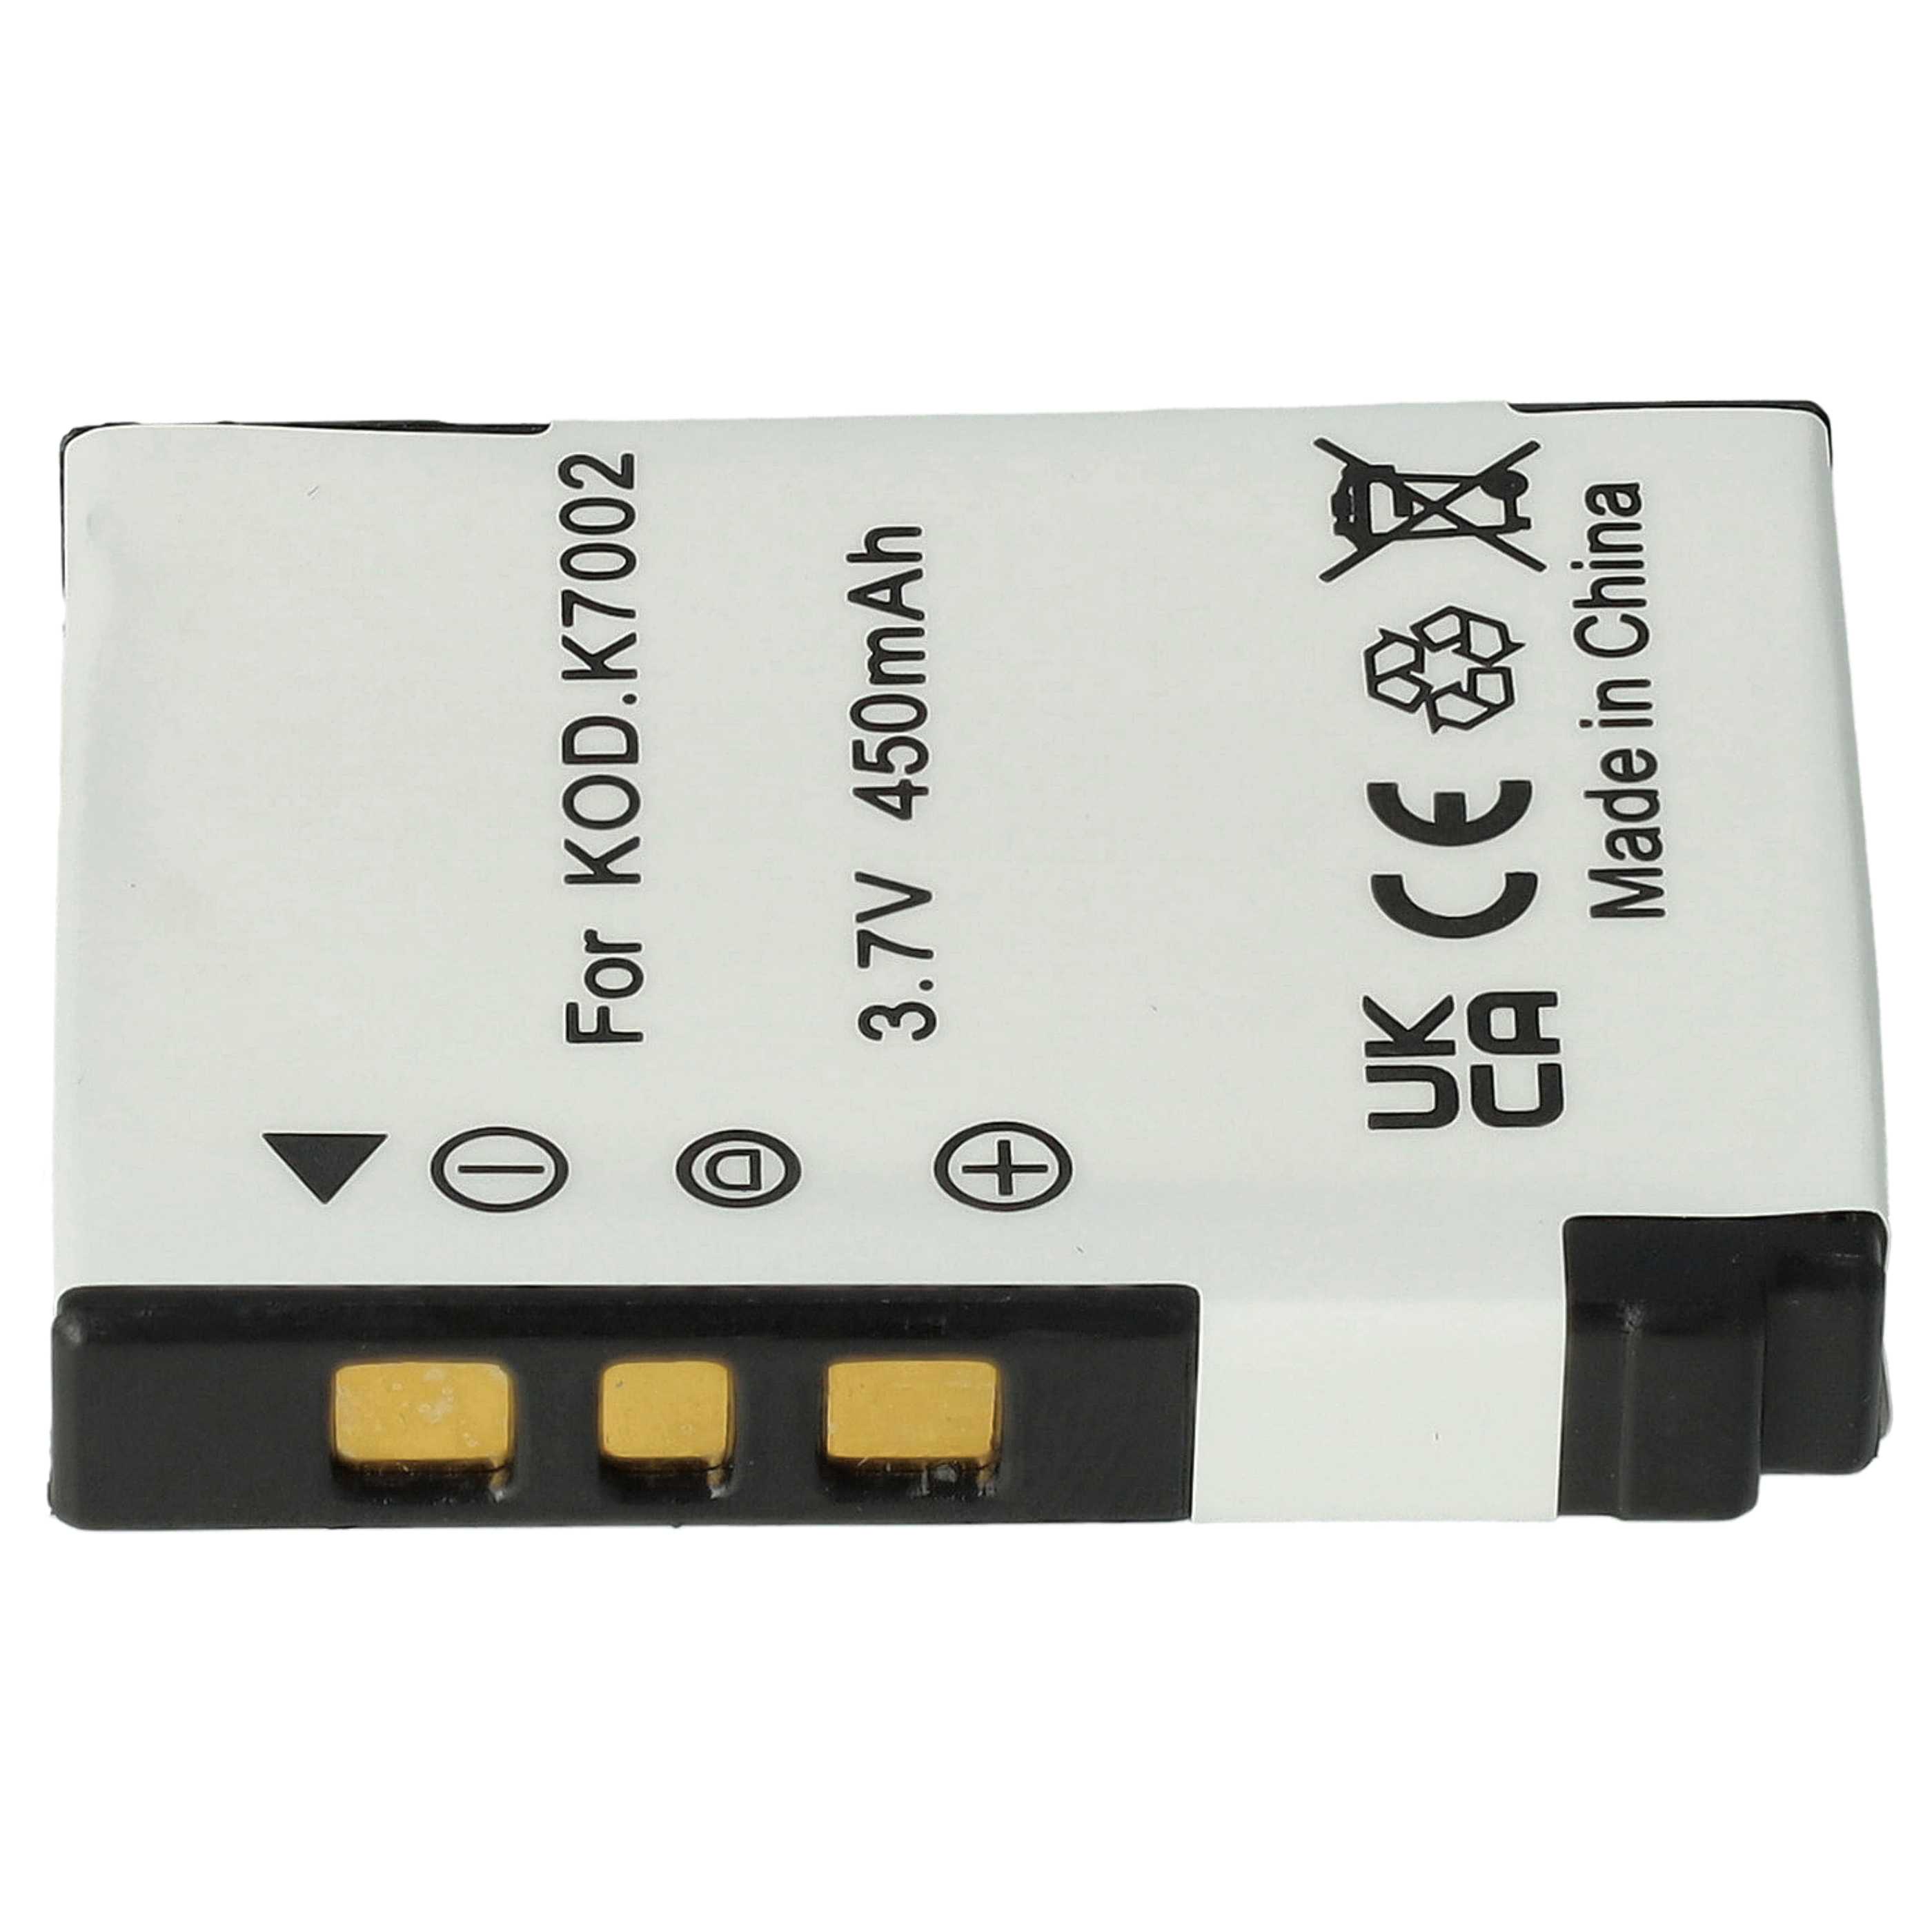 Batterie remplace Kodak Klic-7002 pour appareil photo - 460mAh 3,6V Li-ion